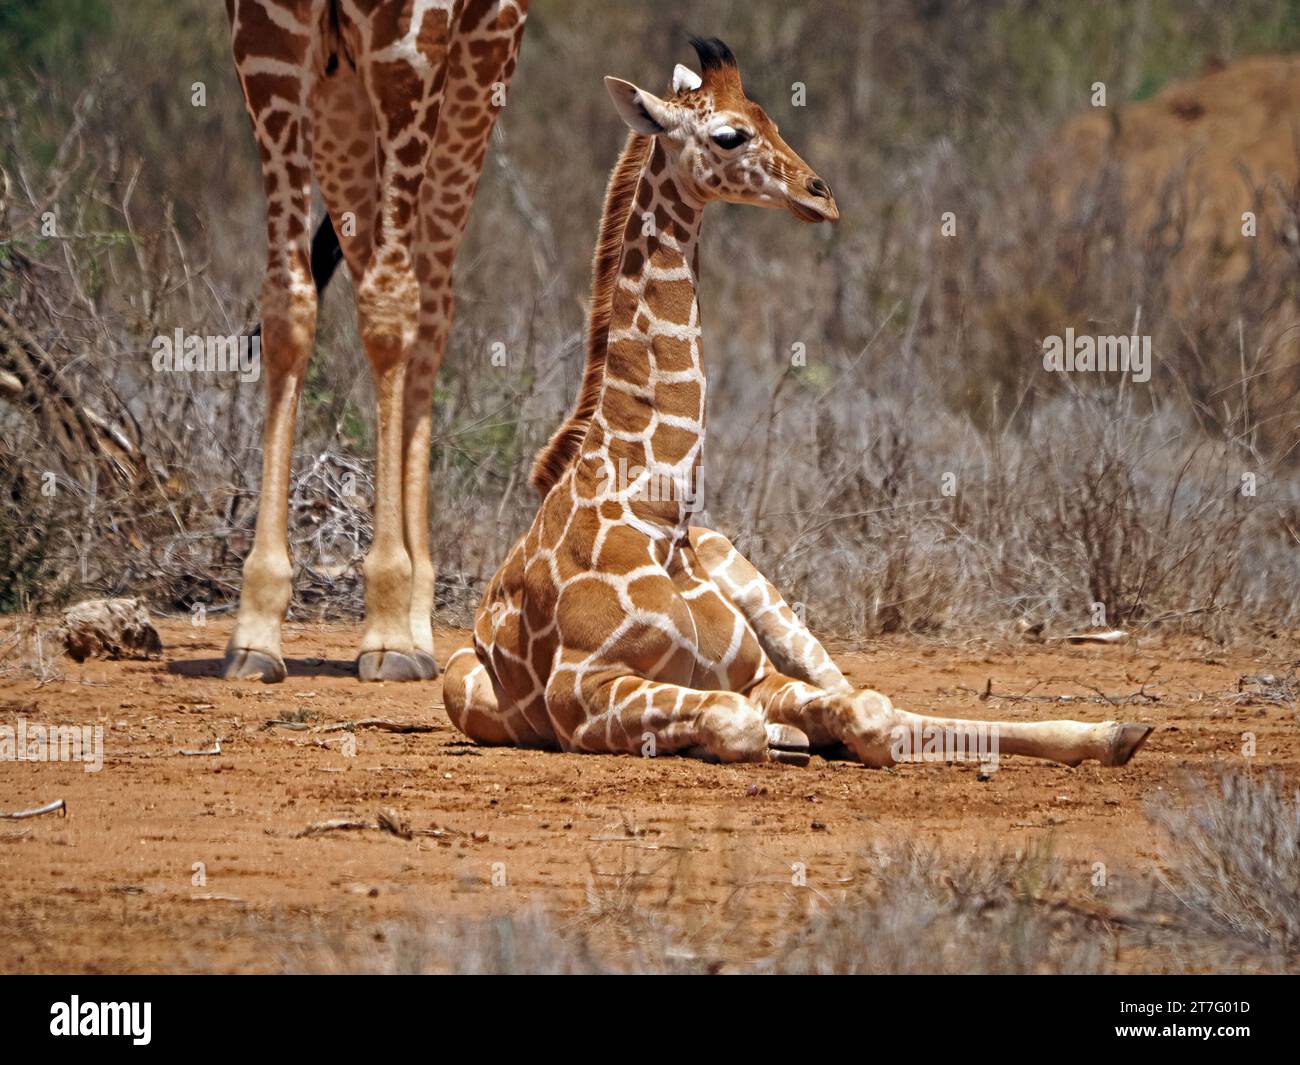 Graziosa giraffa reticolata (Giraffa camelopardalis reticulata) seduto sotto il fratello maggiore nella macchia di acacia di Laikipia, Kenya, Africa Foto Stock